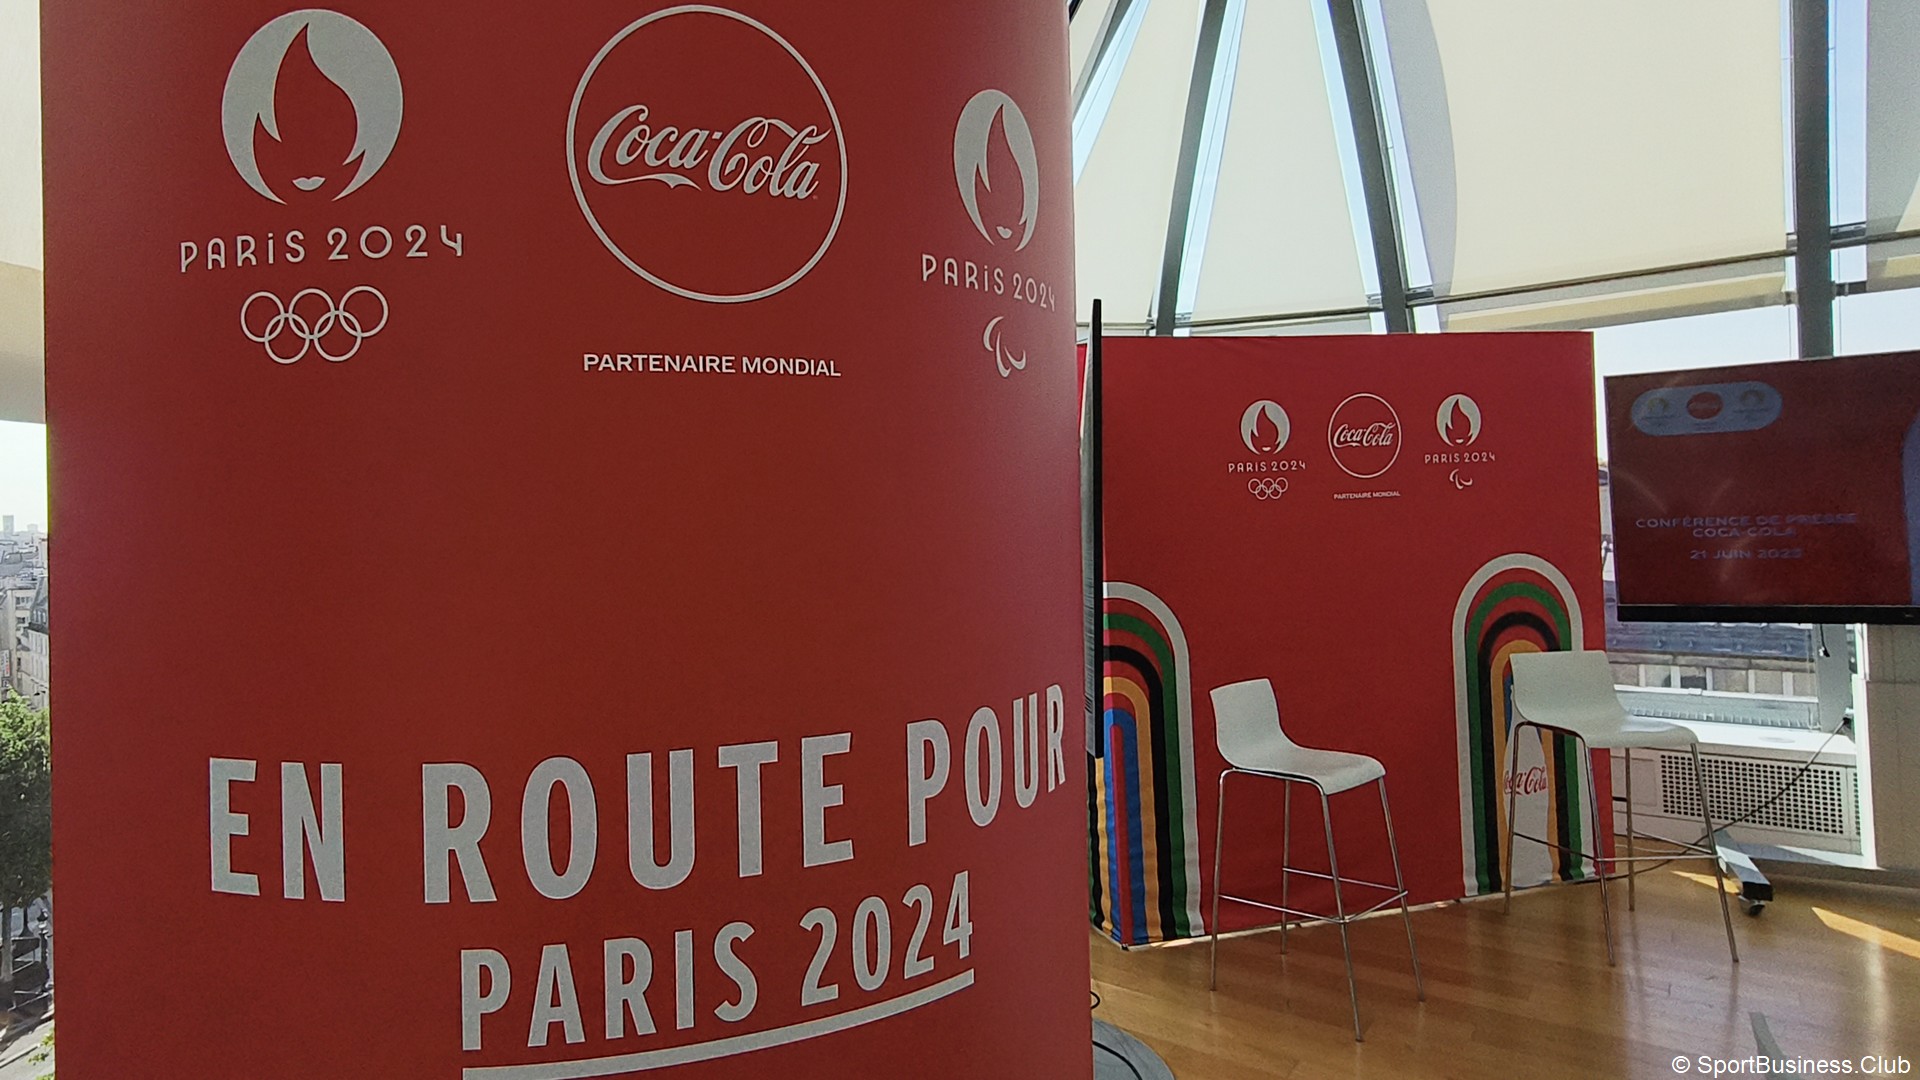 CocaCola occupe le terrain en attendant Paris 2024